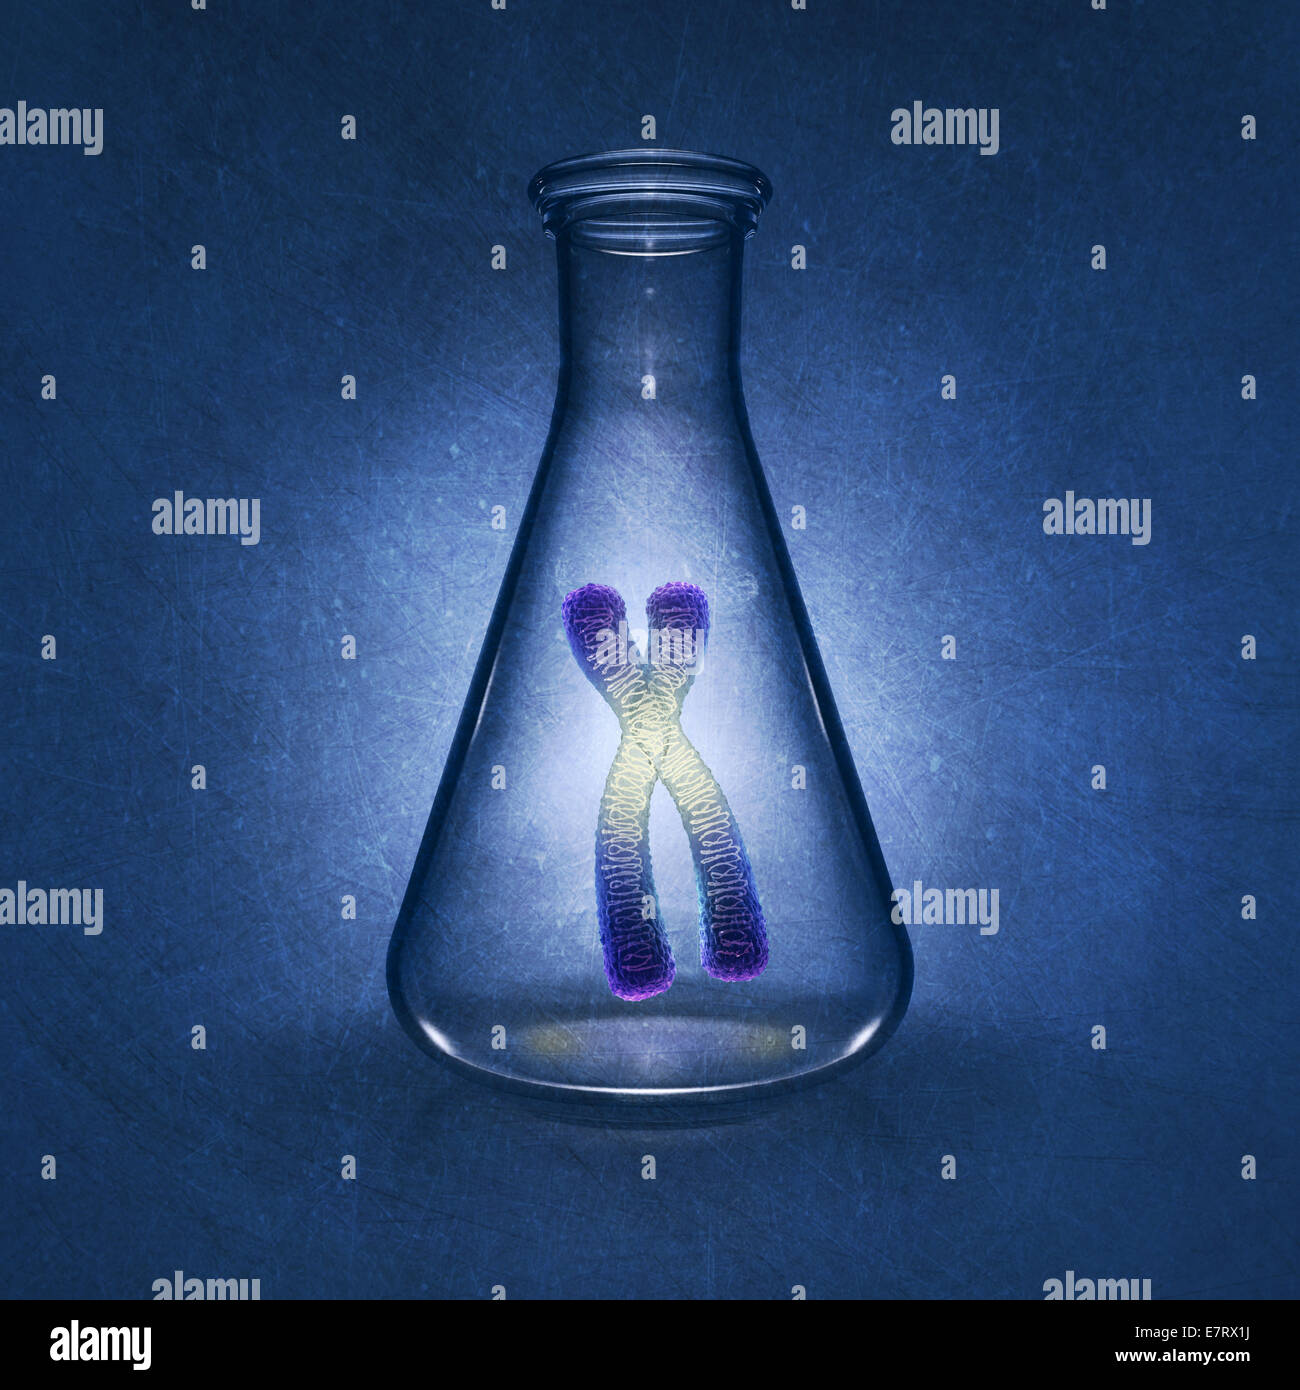 Menschlichen Chromosoms in Labor Kolben auf blauem Hintergrund, detaillierte Darstellung Stockfoto